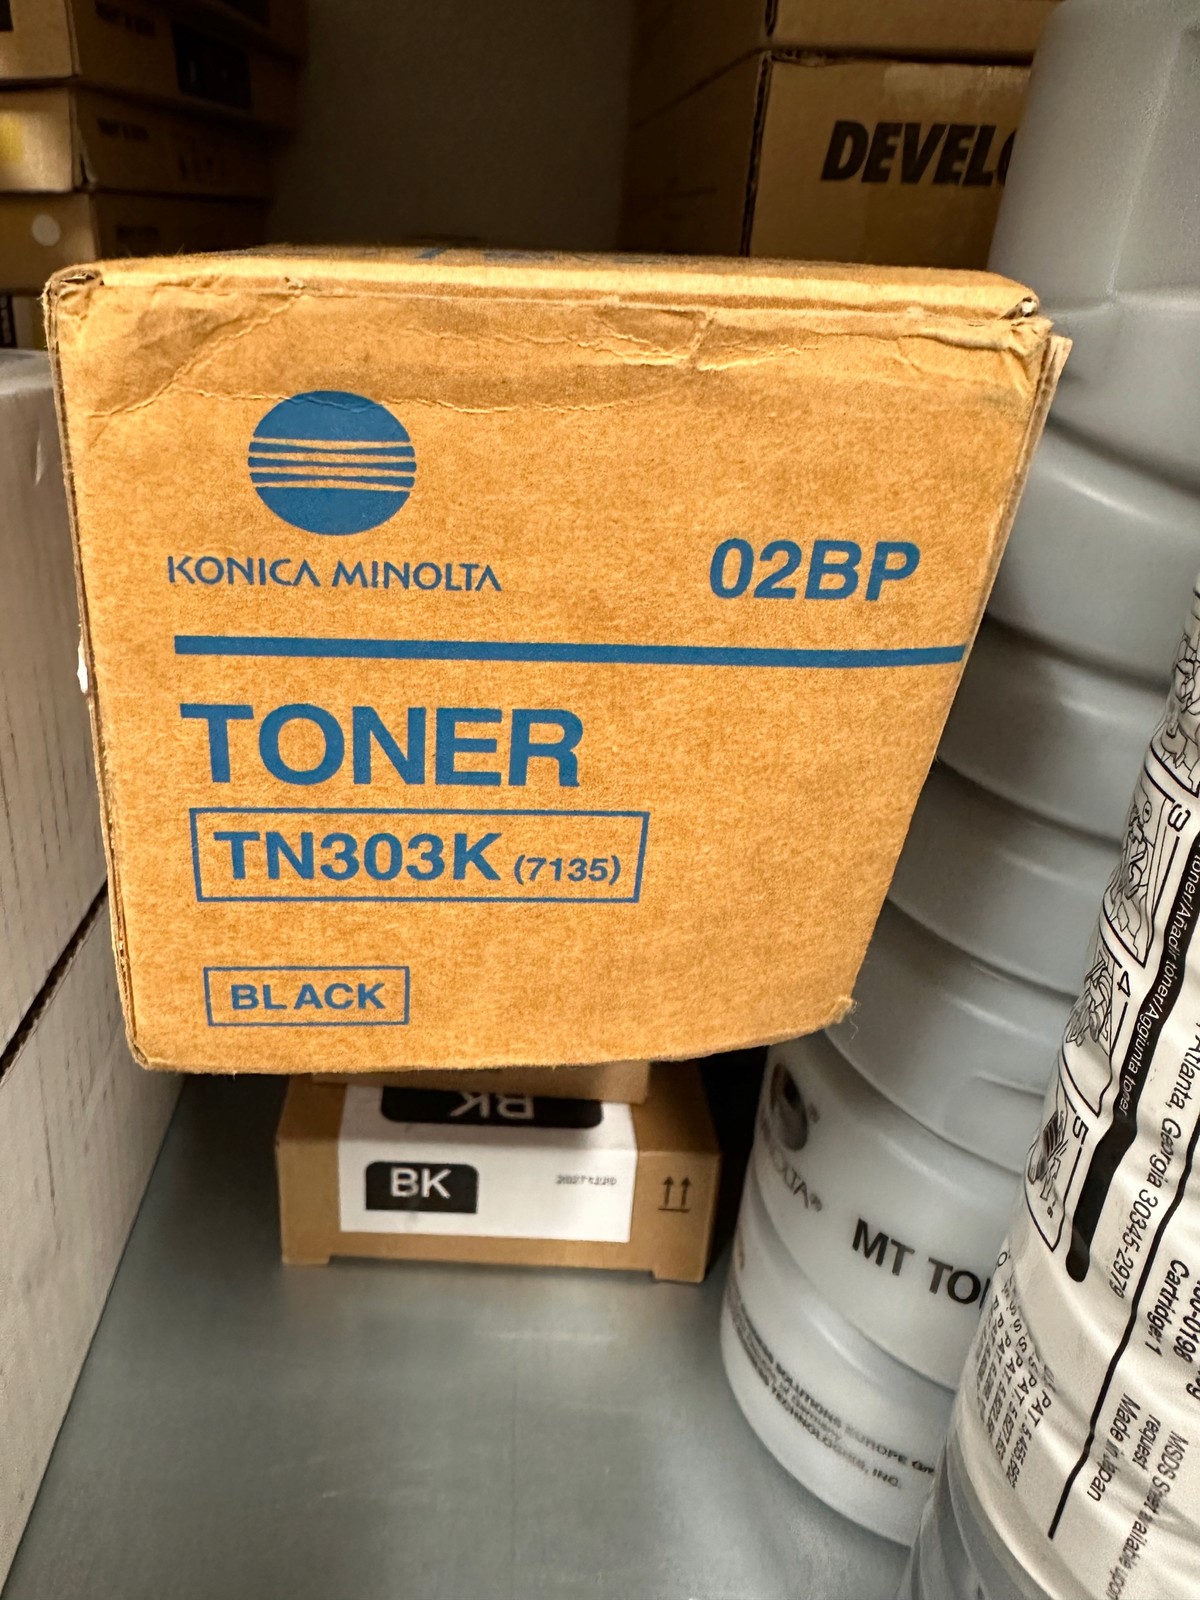 Toner Konica Minolta TN-303K Originál 02BP pro Km 7135